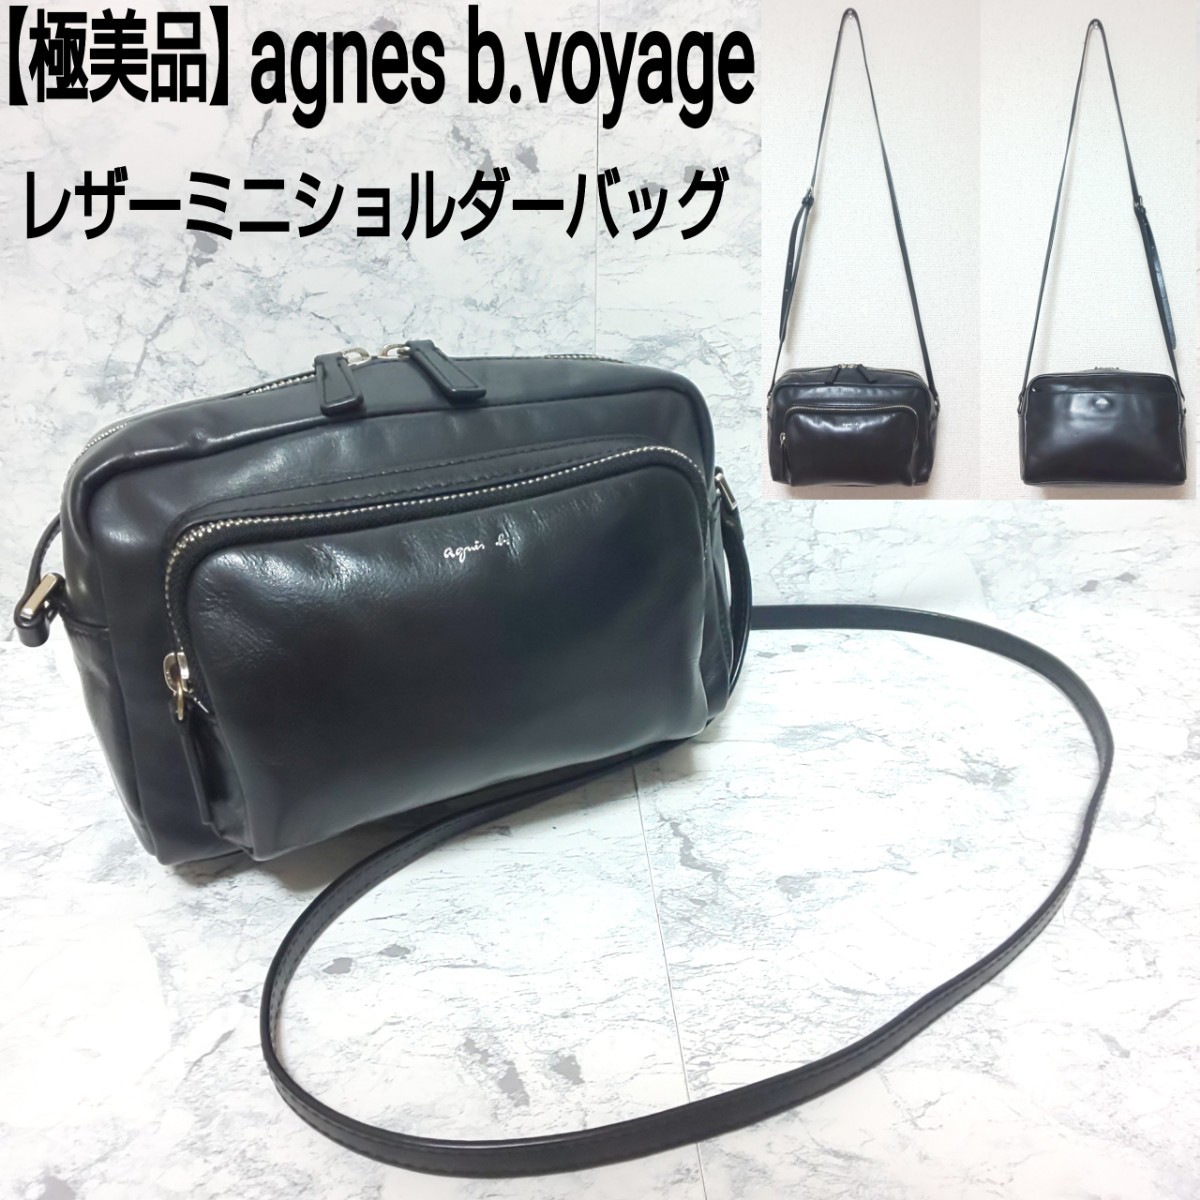 【極美品】agnes b.voyage アニエスベー ボヤージュ レザーミニショルダーバッグ カメラバッグ 牛革 ブラック 黒 レディース